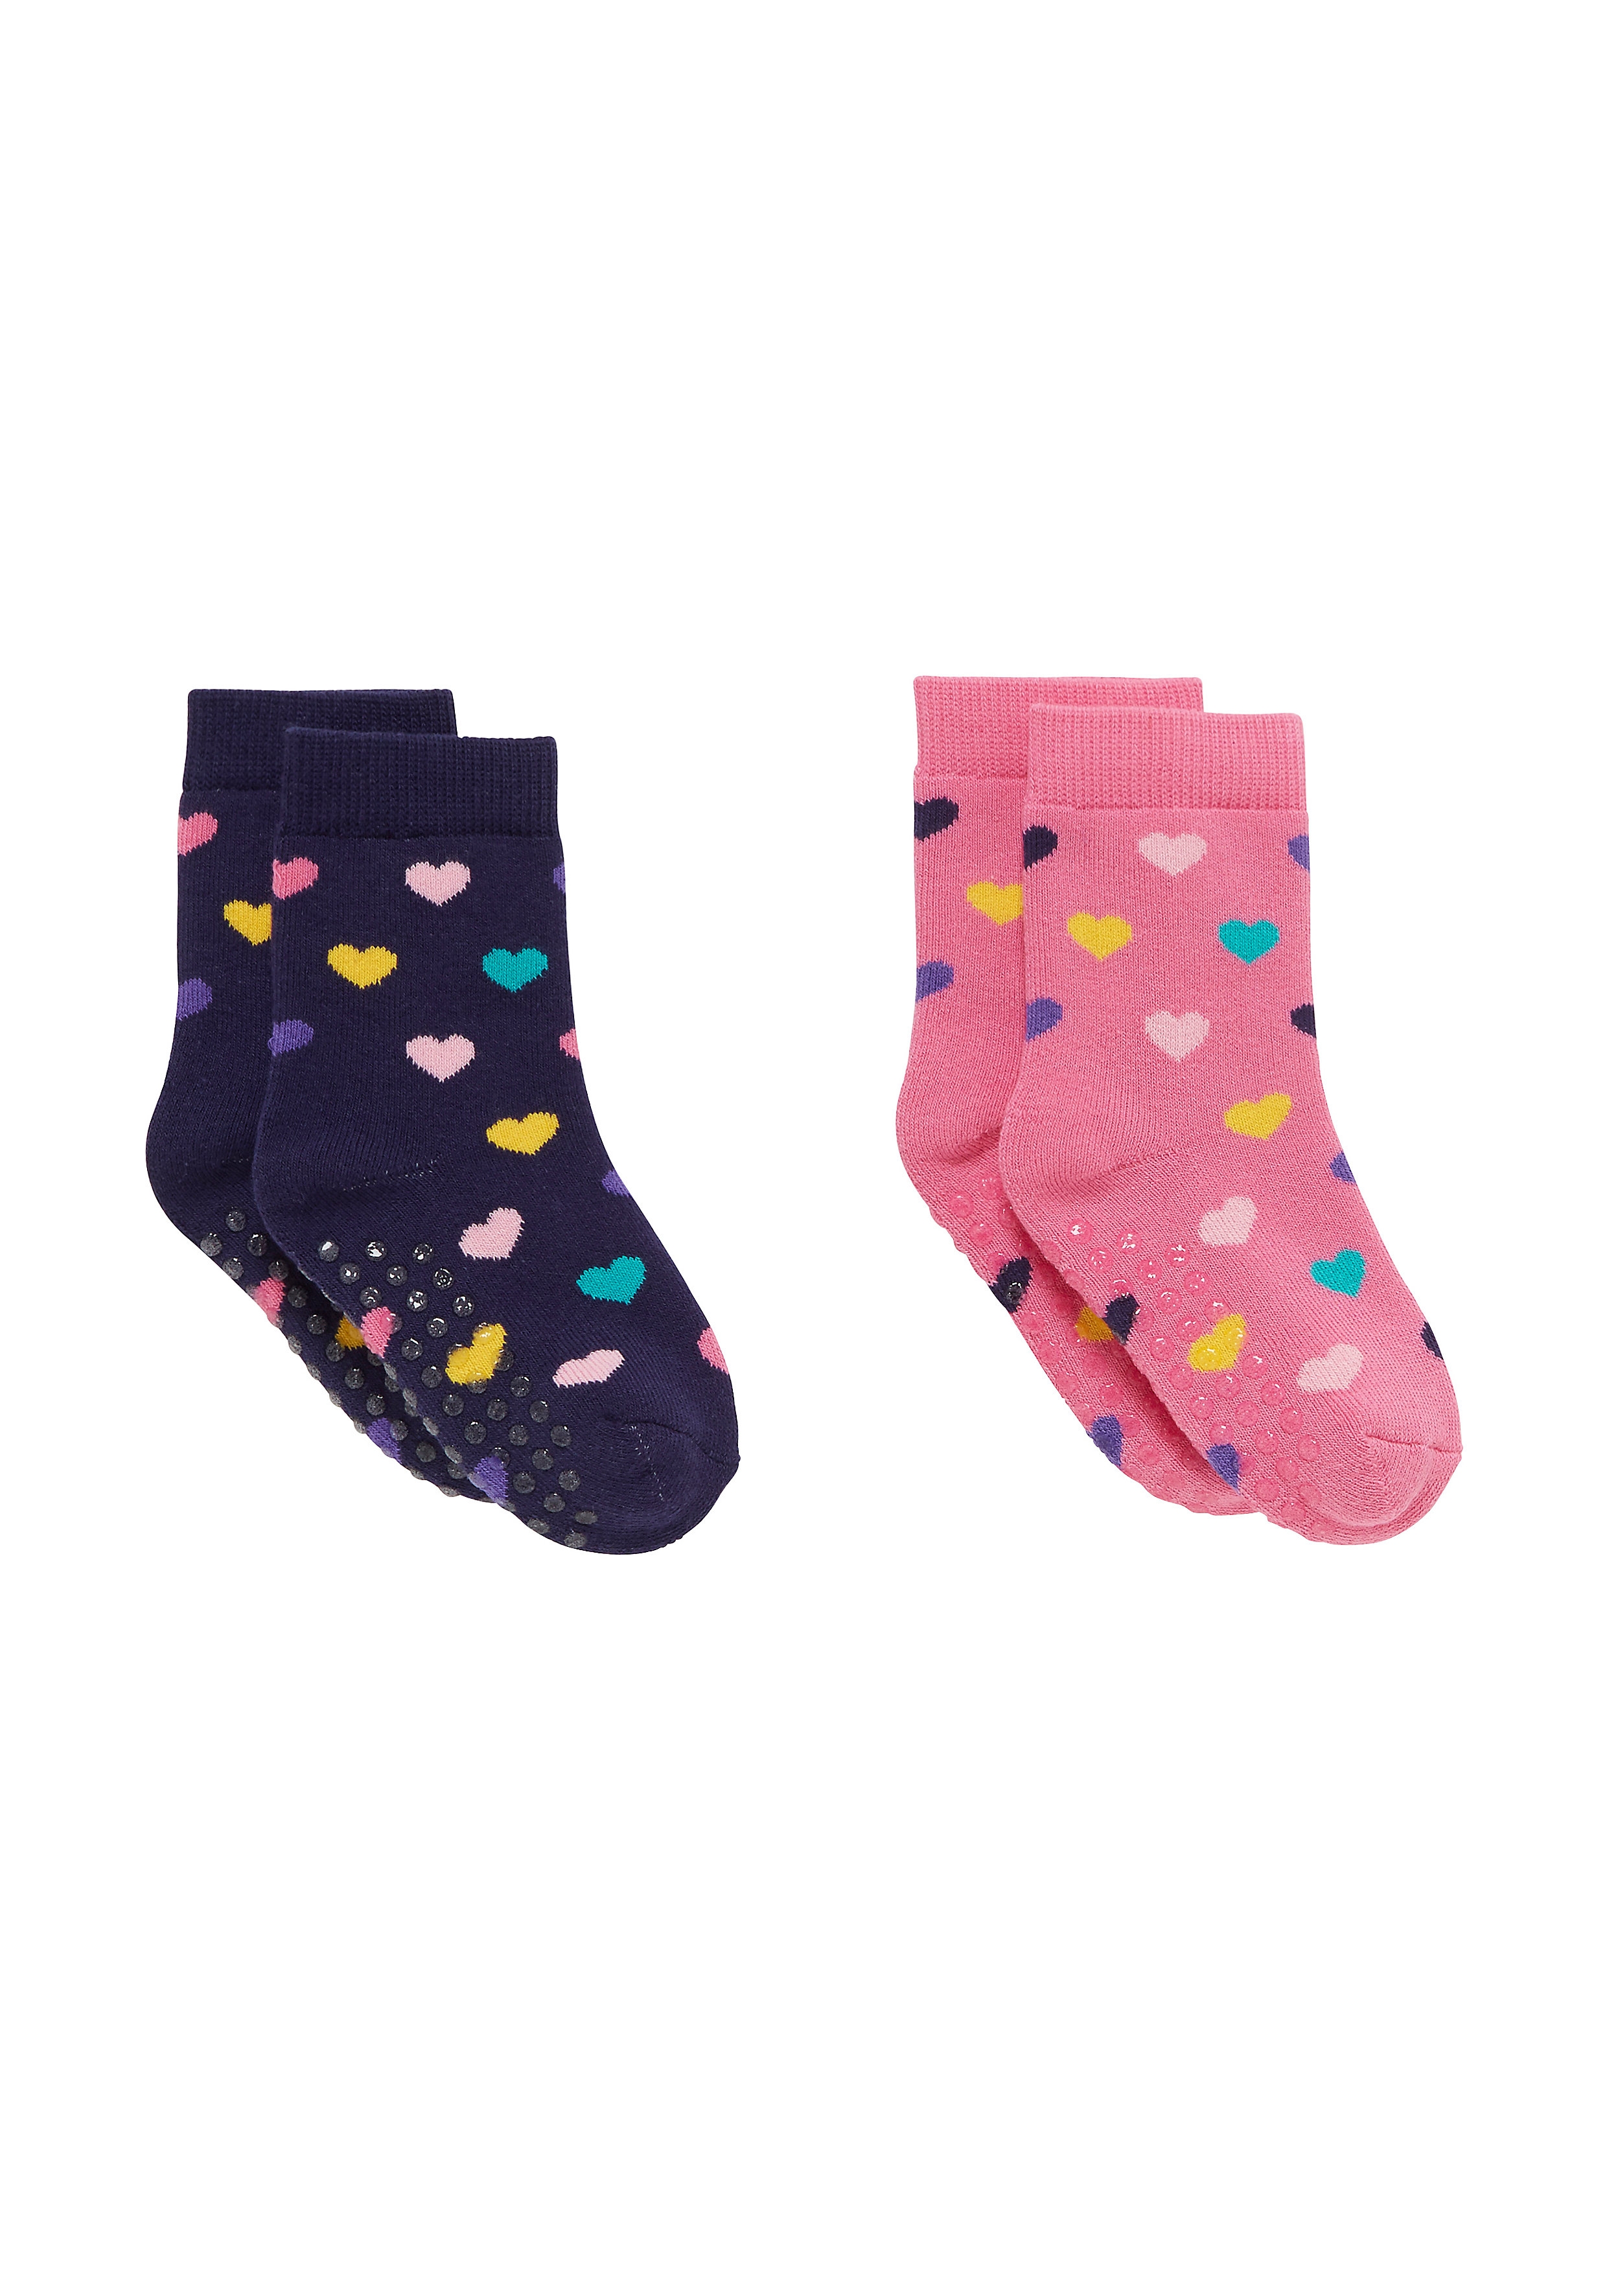 Mothercare | Girls Socks Slipper Type - Pack of 2 - Multicolor 0